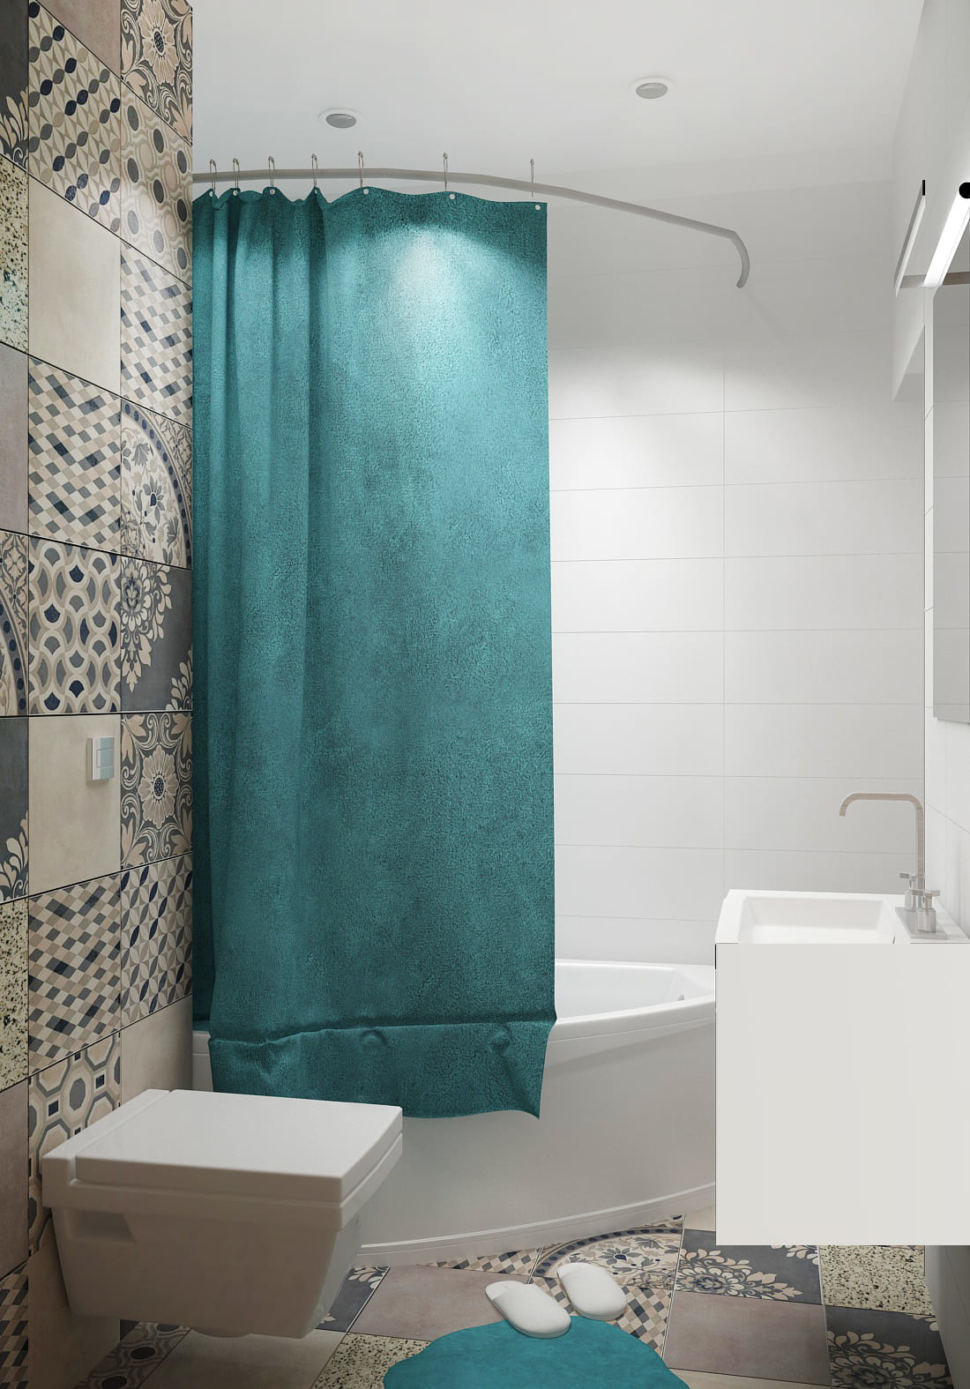 Визуализация совмещённый санузла с ванной 4 кв.м с белыми и серыми оттенками, ванная, зеркало, серая геометрическая плитка, унитаз